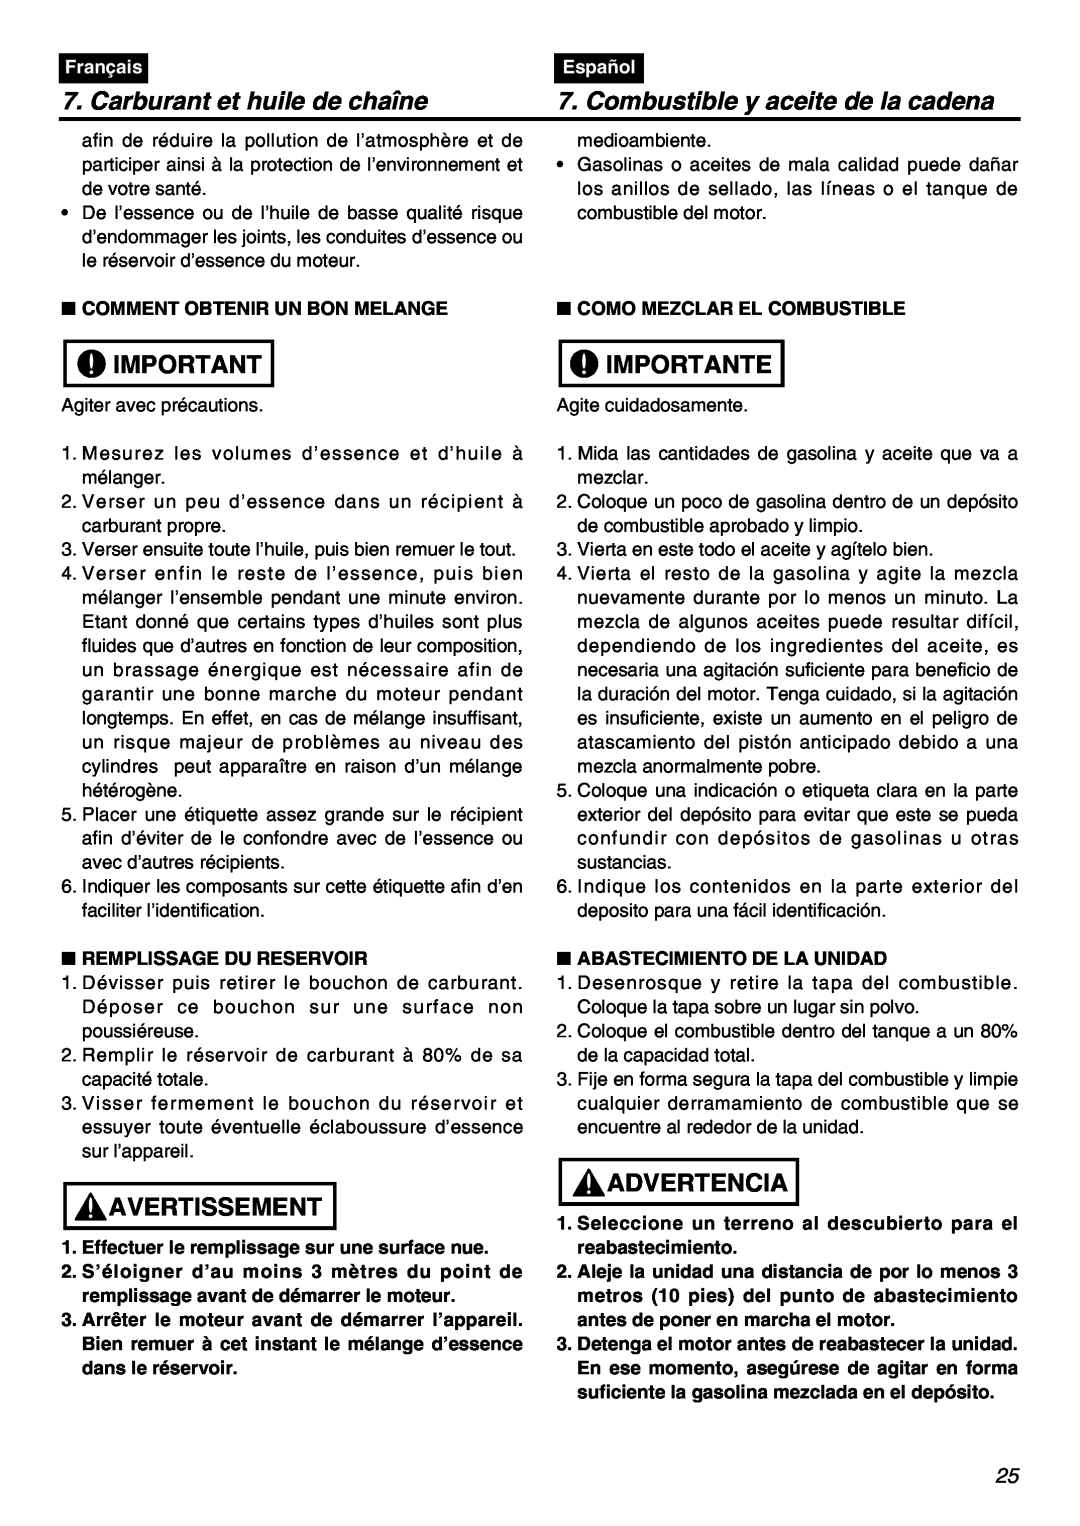 RedMax GZ400 manual Carburant et huile de chaîne, Combustible y aceite de la cadena, Importante, Avertissement, Advertencia 